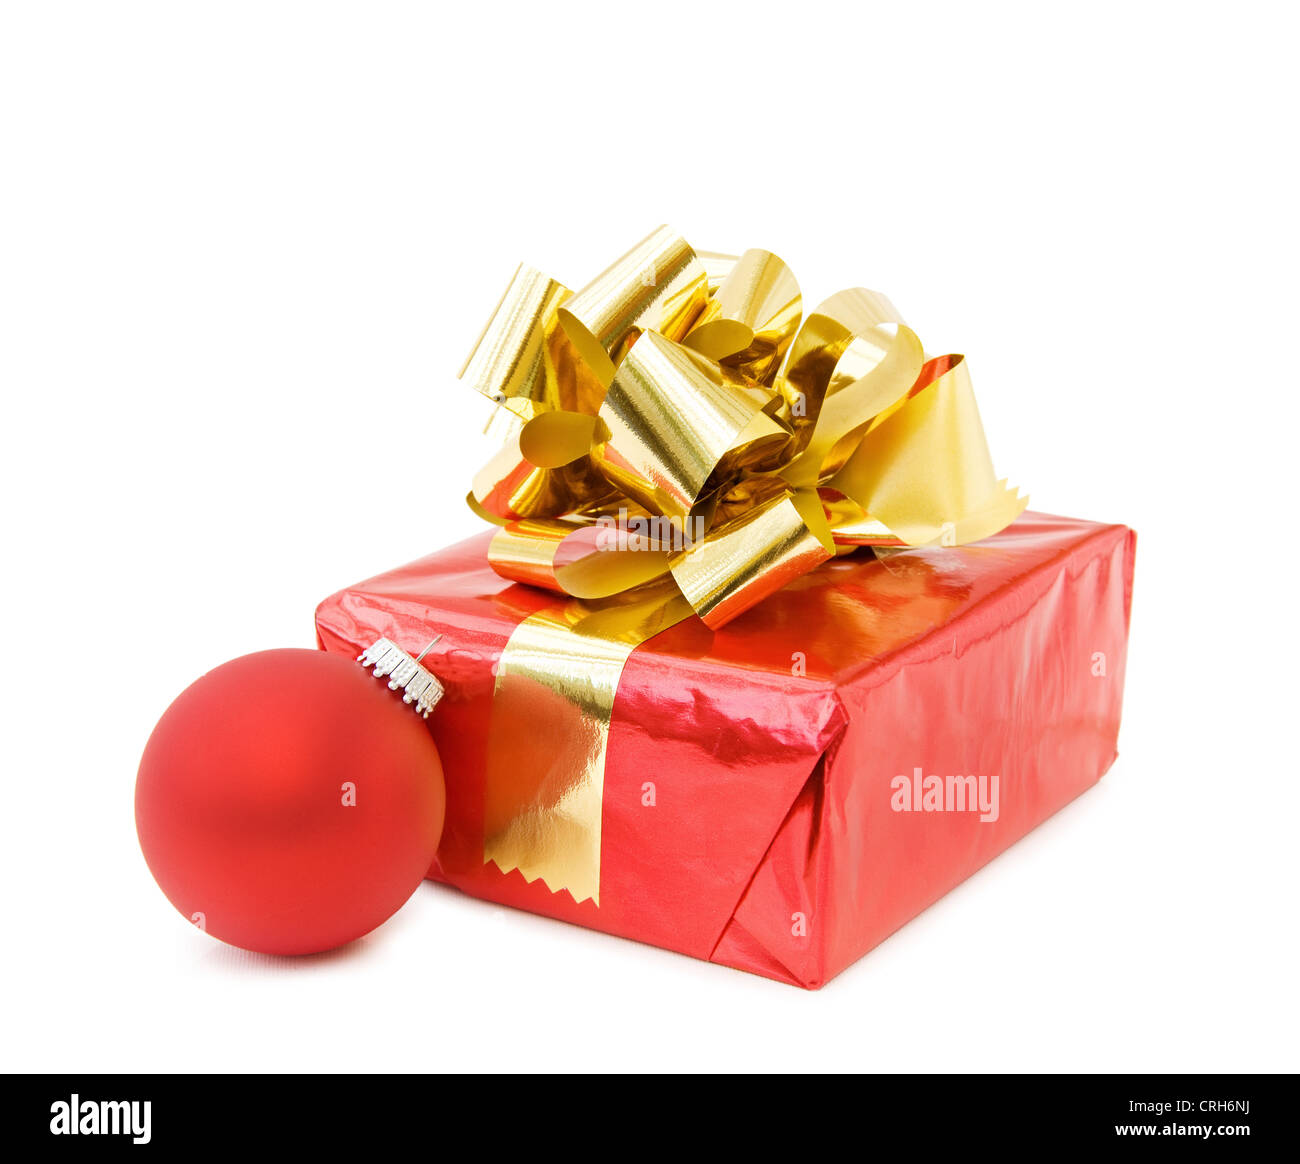 Célébration de Noël avec les cadeaux de fête et babiole rouge traditionnel. Plus isolé sur fond blanc. Banque D'Images